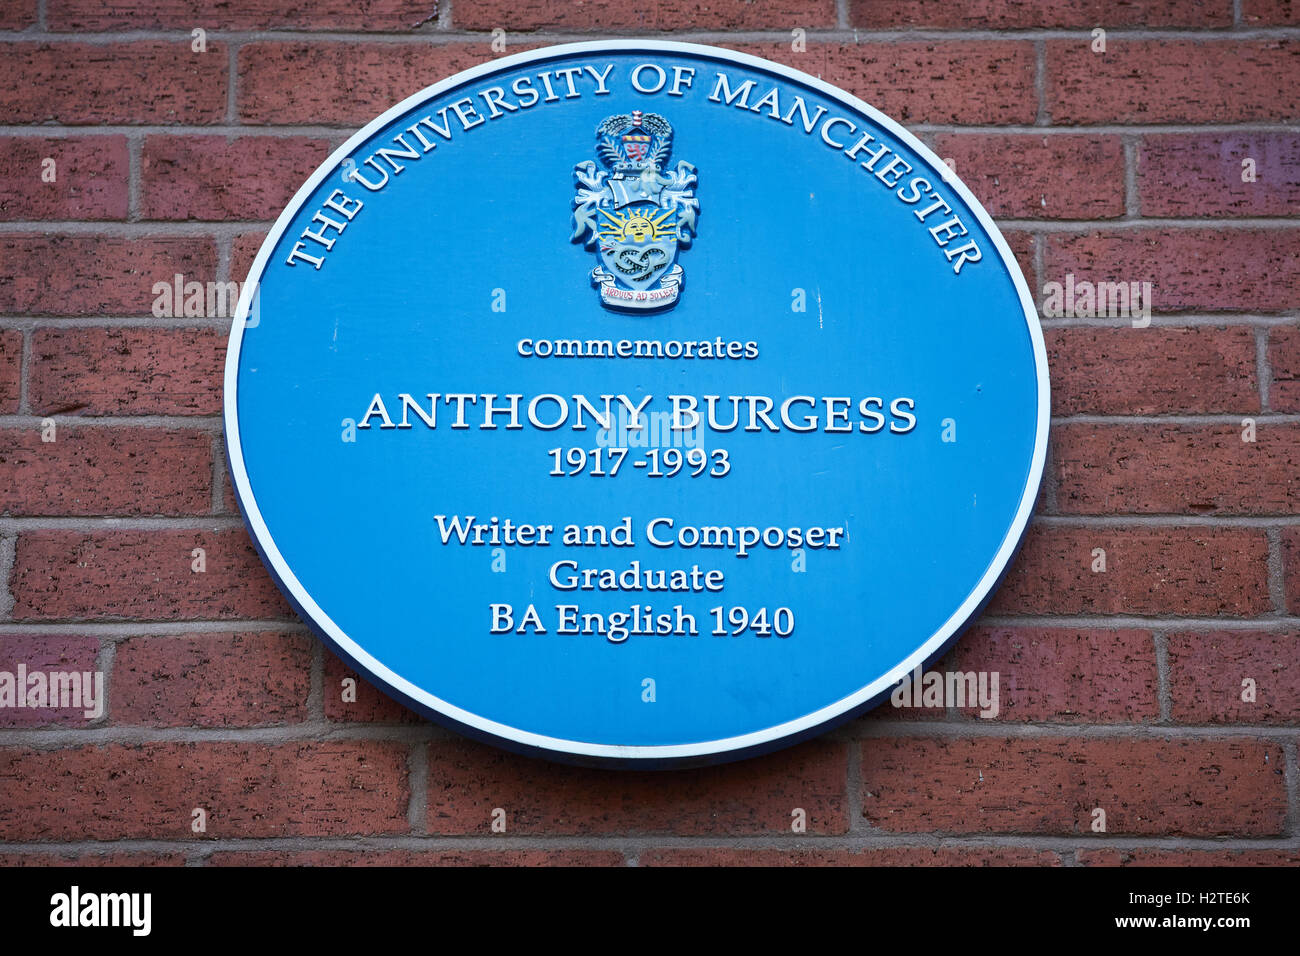 Anthony Burgess blu della placca Manchester University scrittore compositore mancunian commemora commemorazione storica laureato histo Foto Stock